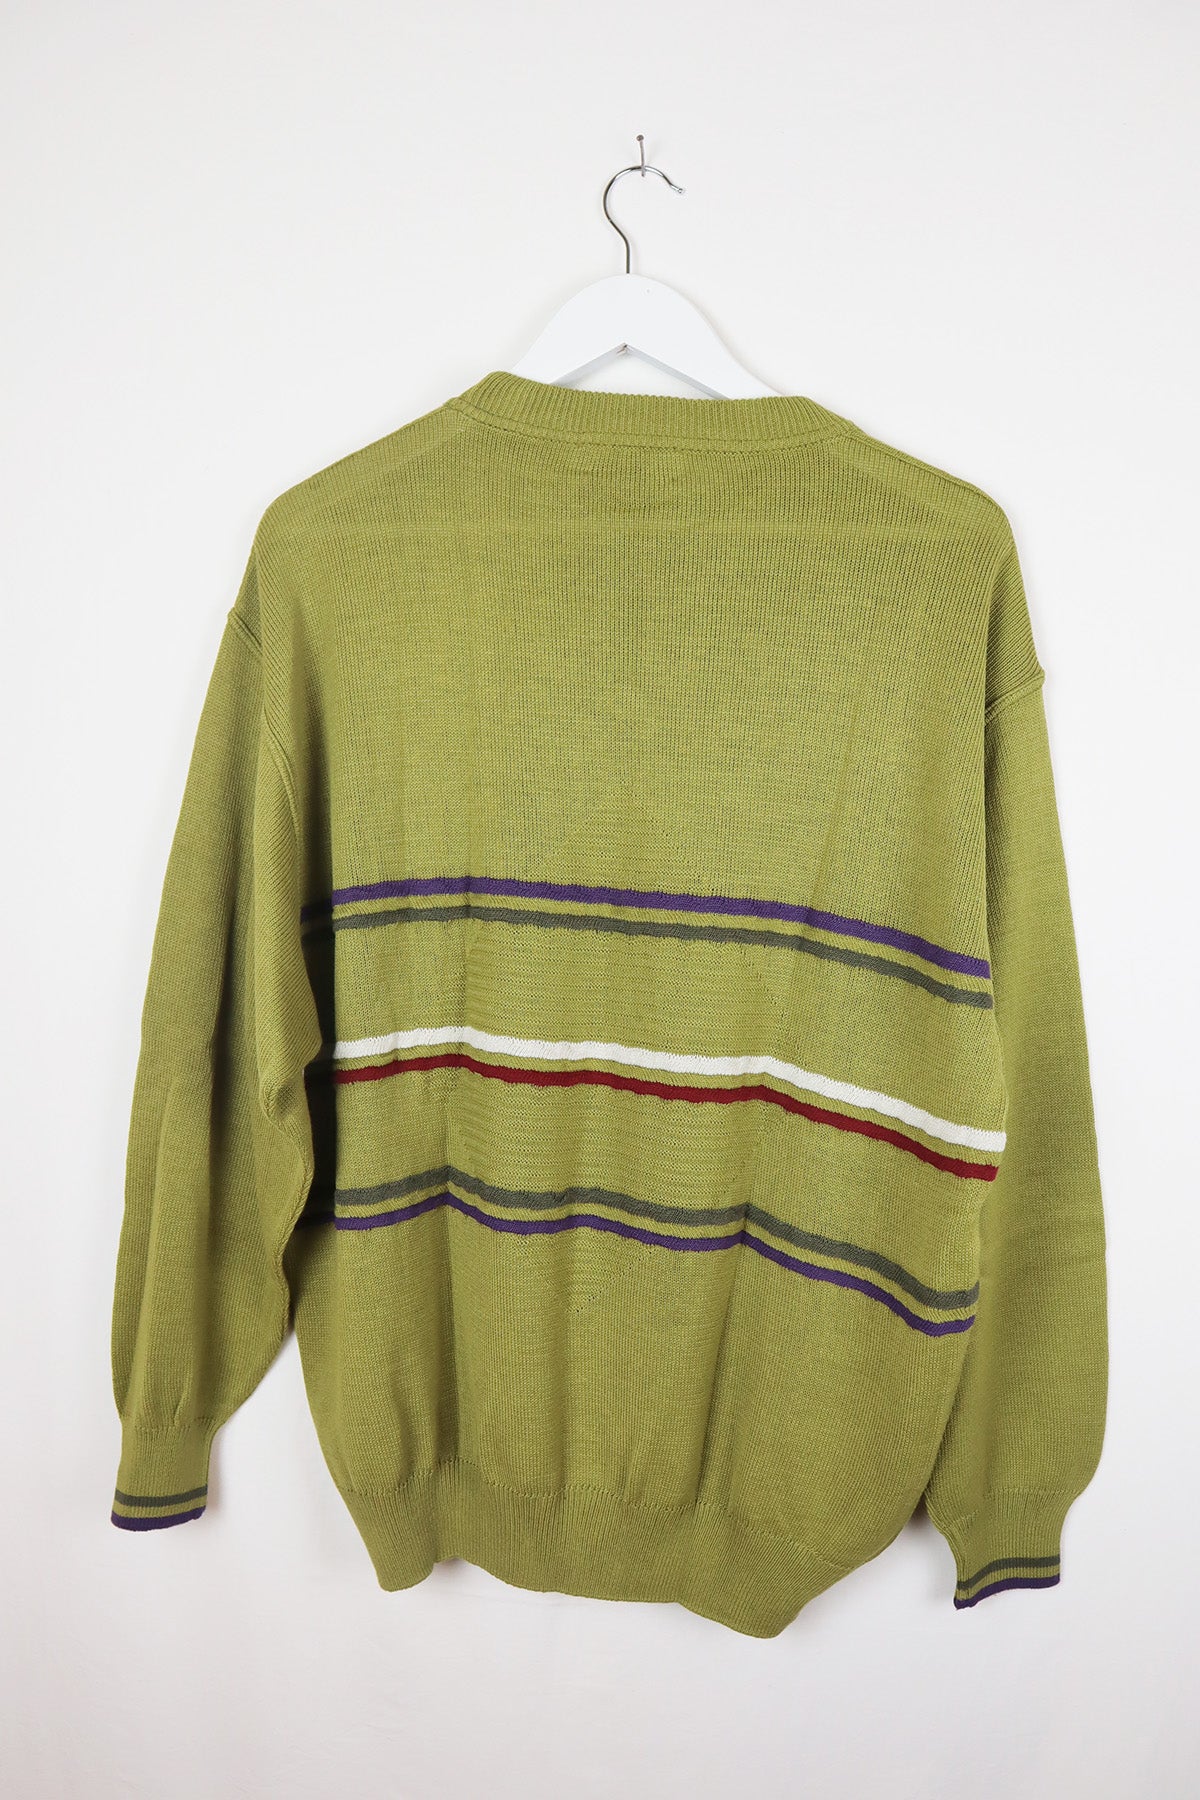 Unisex Pullover Vintage Kiwi Grün Streifen ( Gr. M/L )